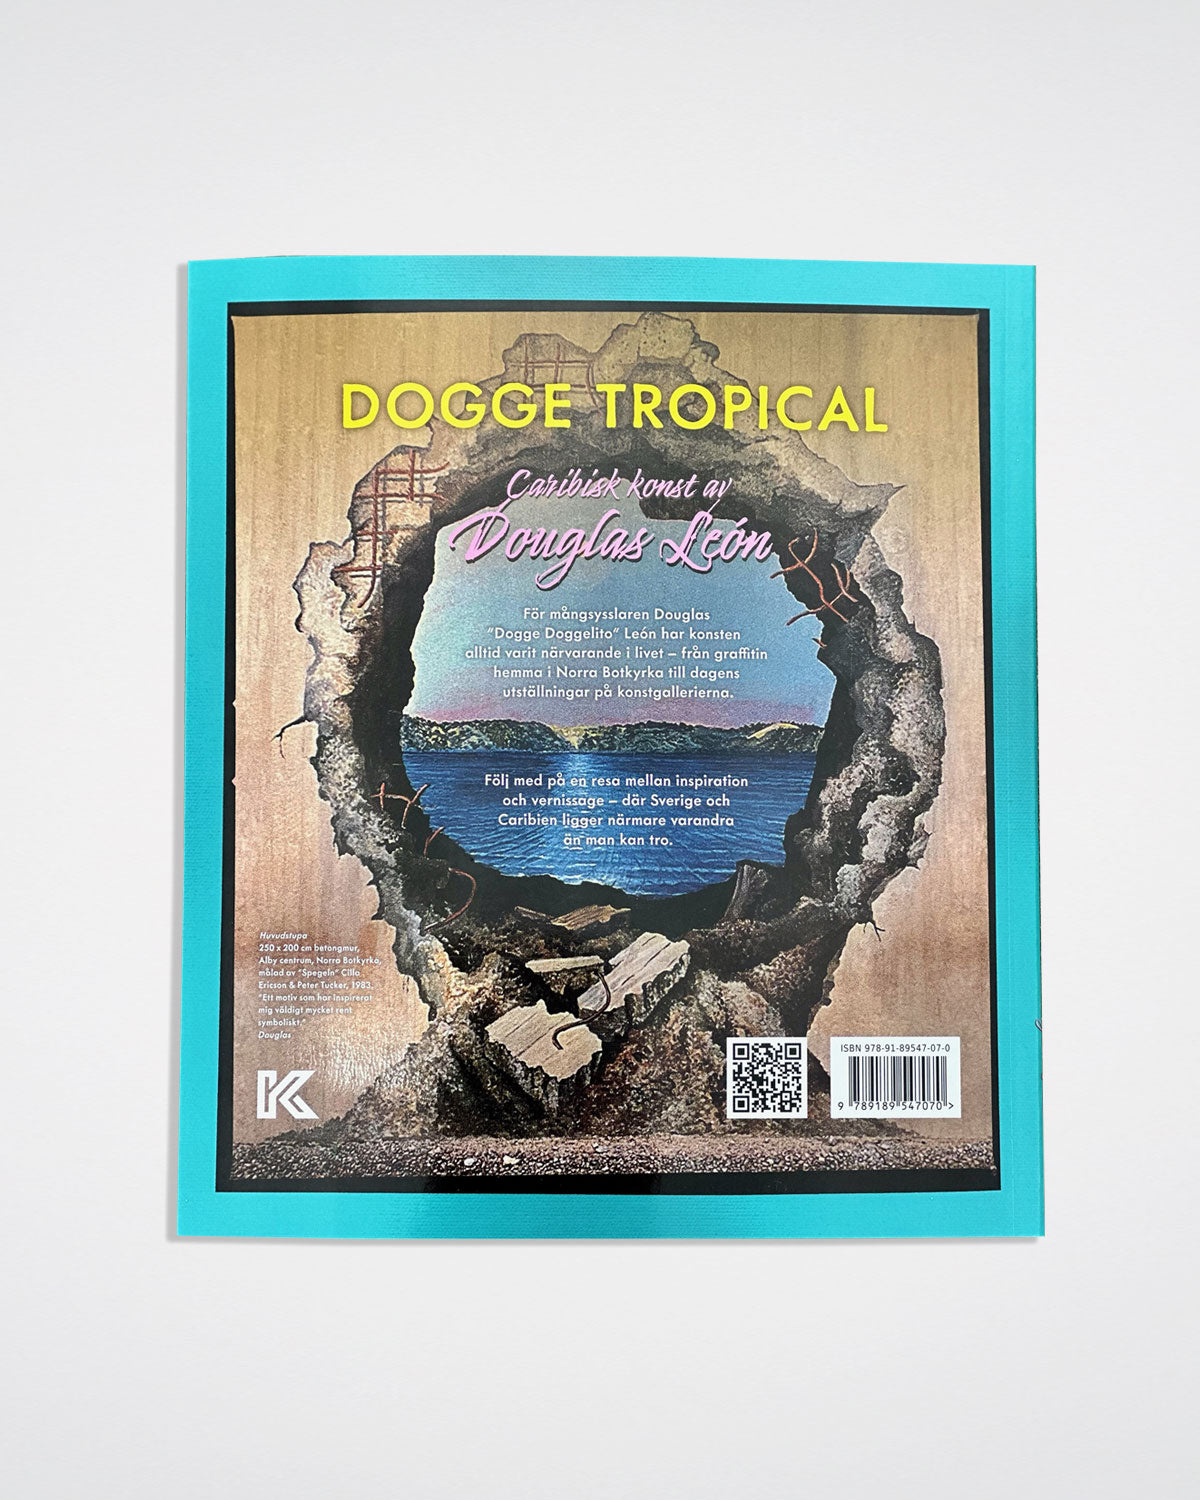 Dogge Tropical – Caribisk konst av Douglas León - Signerad